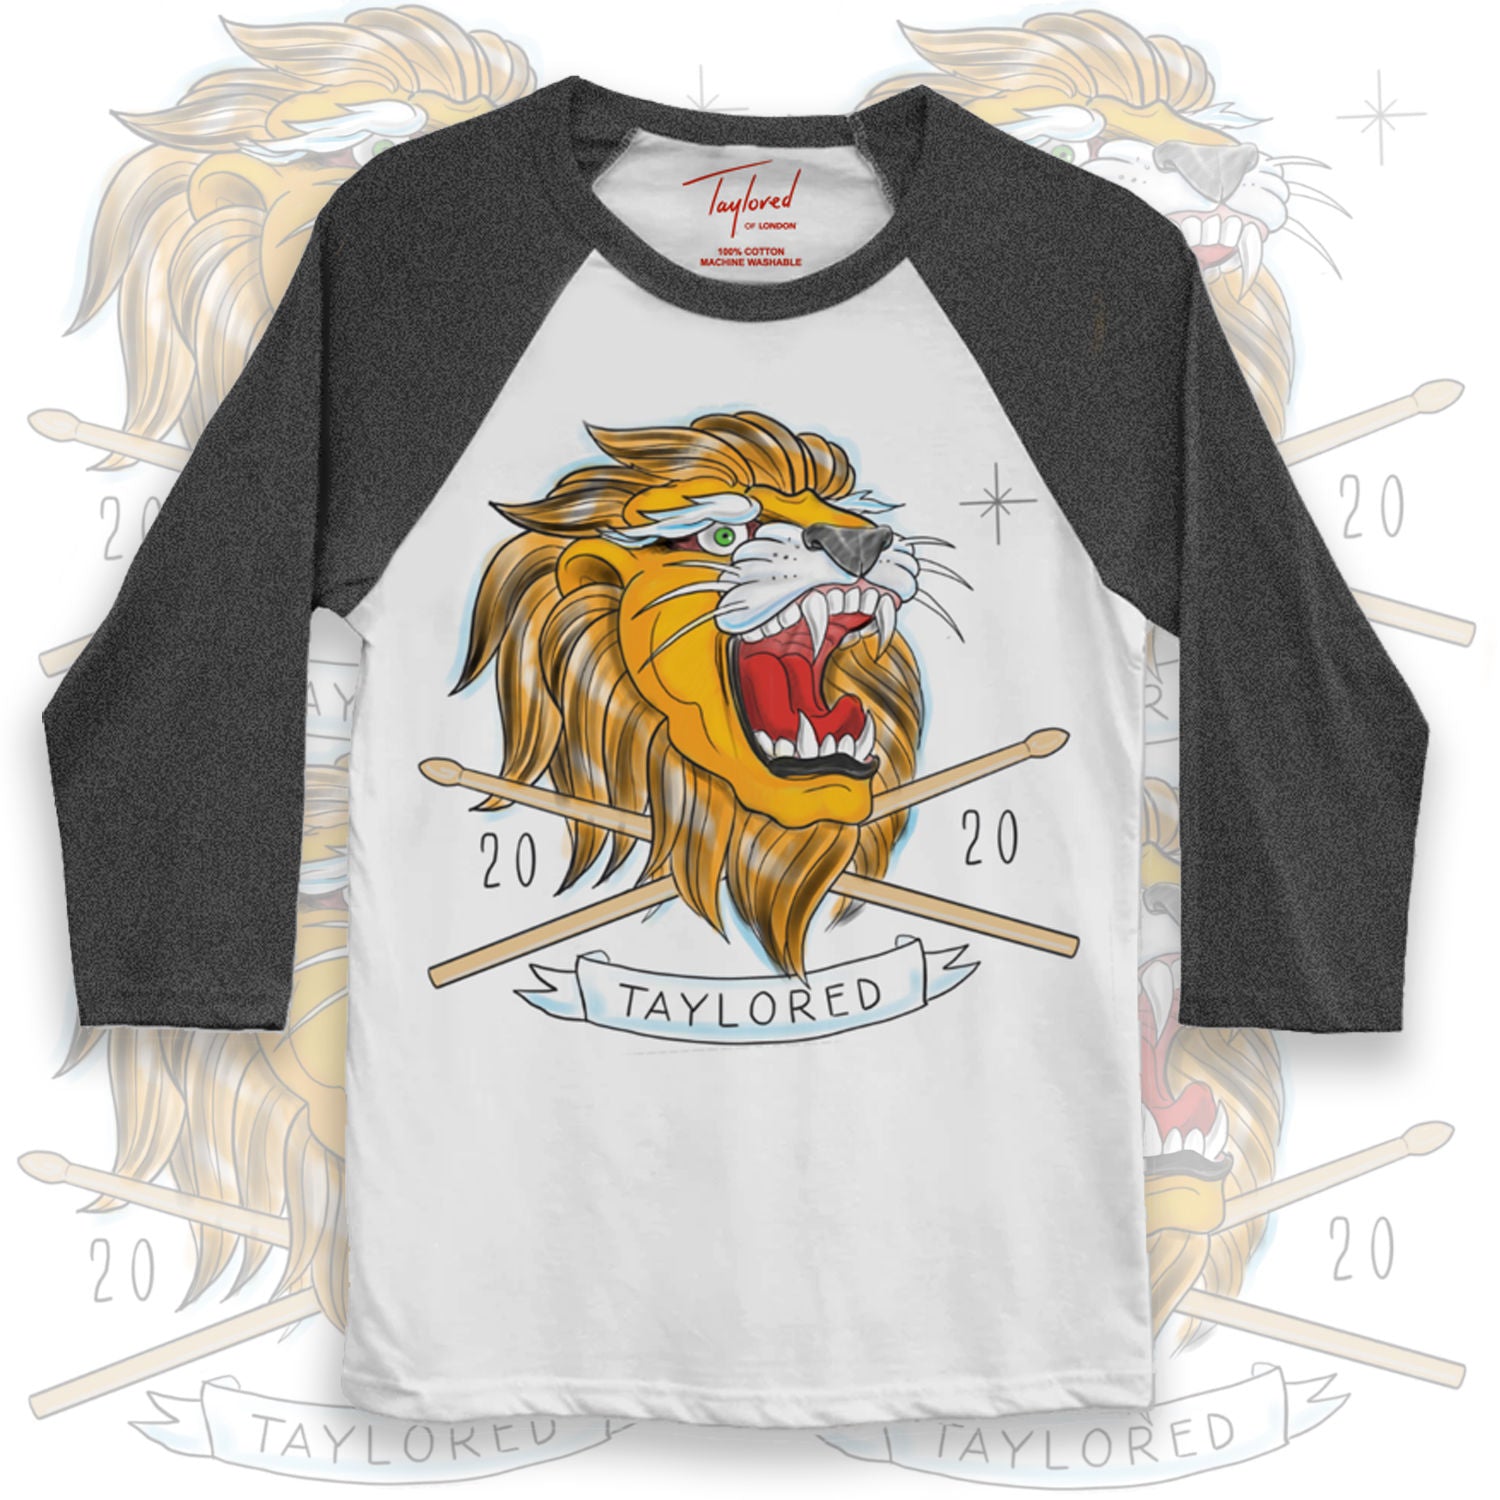 Roger Taylor - 'Taylored' 2020 Lion Grey Baseball Shirt 